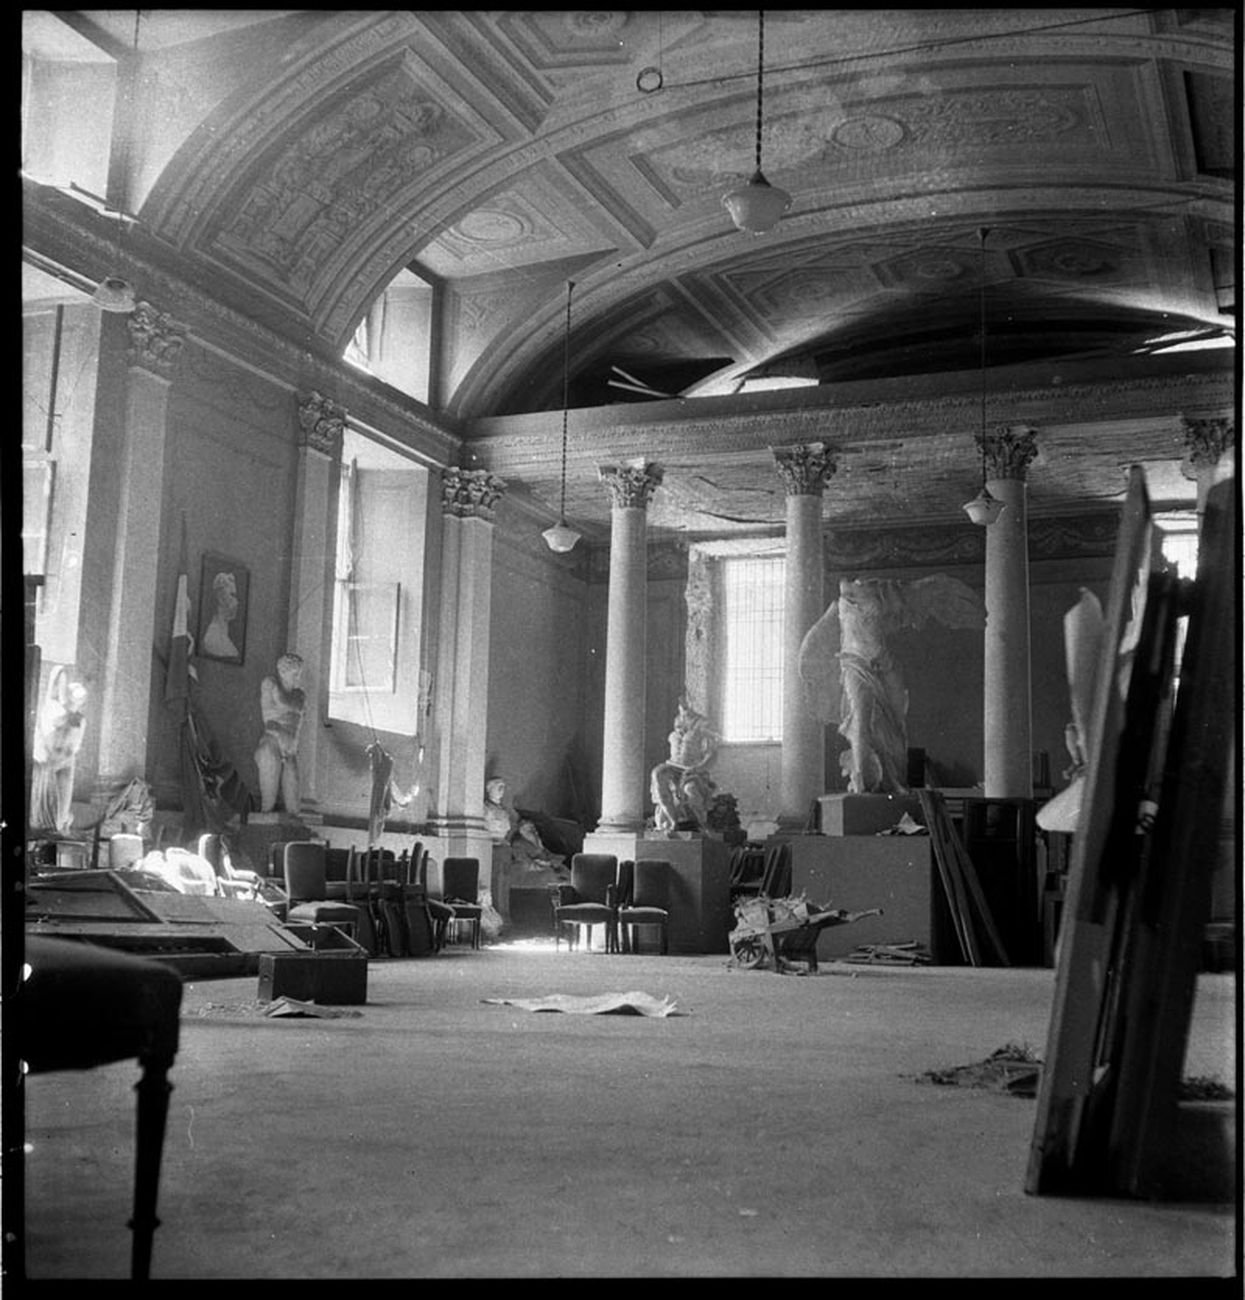 Publifoto, Le sale dell’Accademia di Belle Arti devastate dai bombardamenti, agosto 1943. Milano, Archivio Publifoto